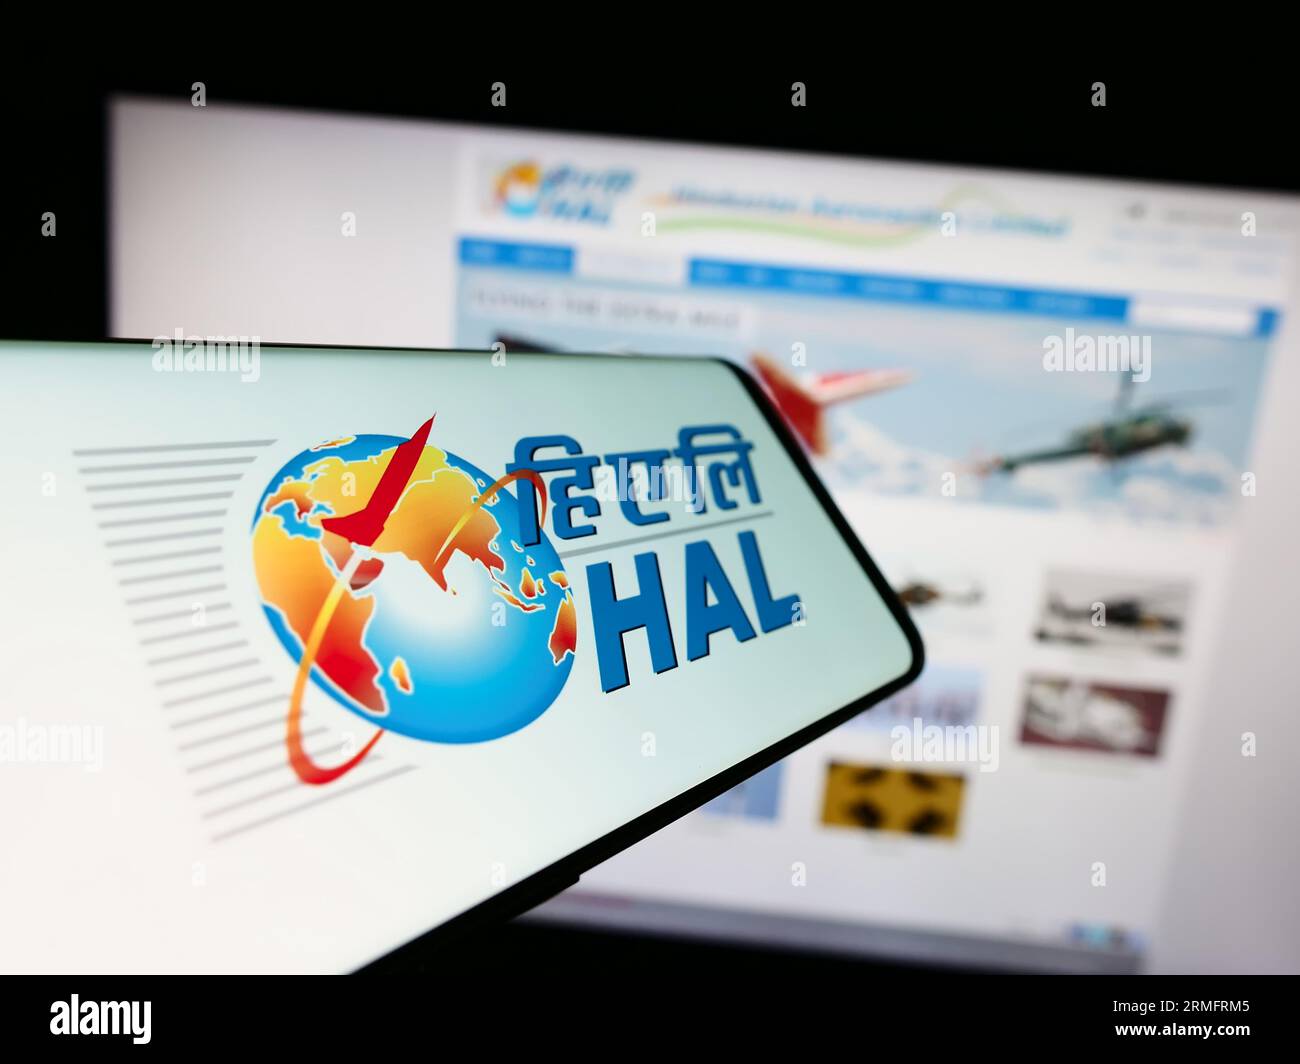 Téléphone portable avec logo de la société Hindustan Aeronautics Limited (HAL) sur l'écran devant le site Web de l'entreprise. Concentrez-vous sur le centre de l'écran du téléphone. Banque D'Images